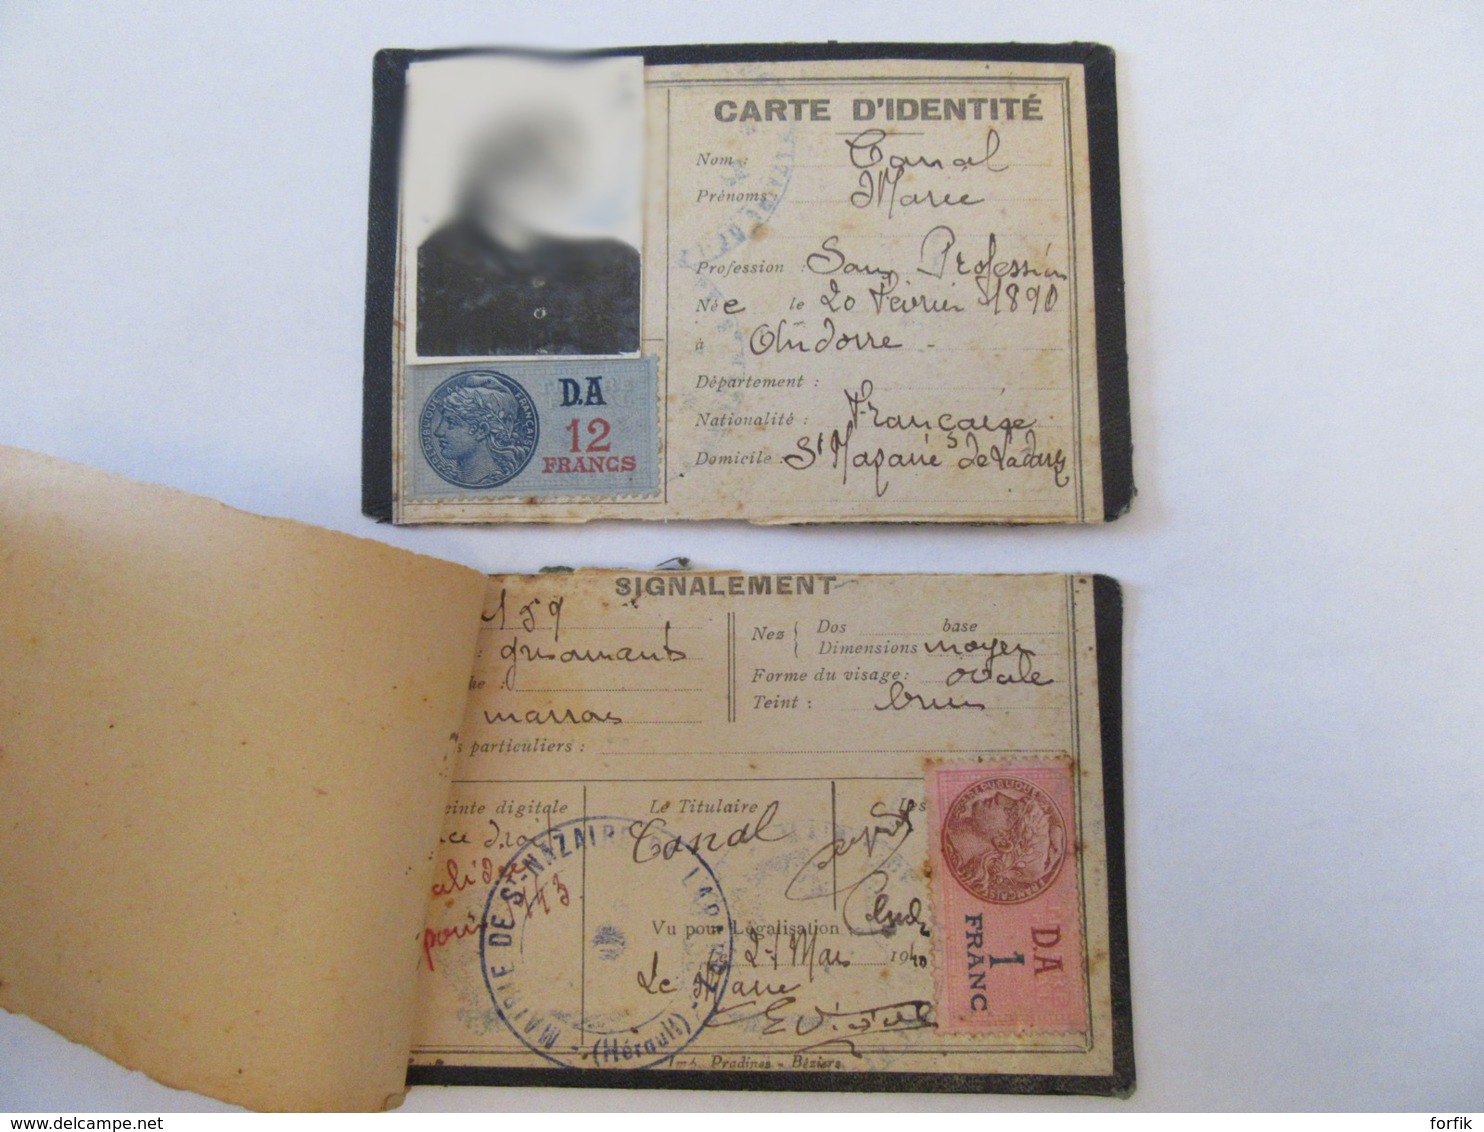 France - Guerre 39-45 - Carte D'identité Datée 1940 + Feuillet Daté Du 2 Mars 1944 - Timbres Fiscaux D.A 1 Et 12 Francs - Documents Historiques